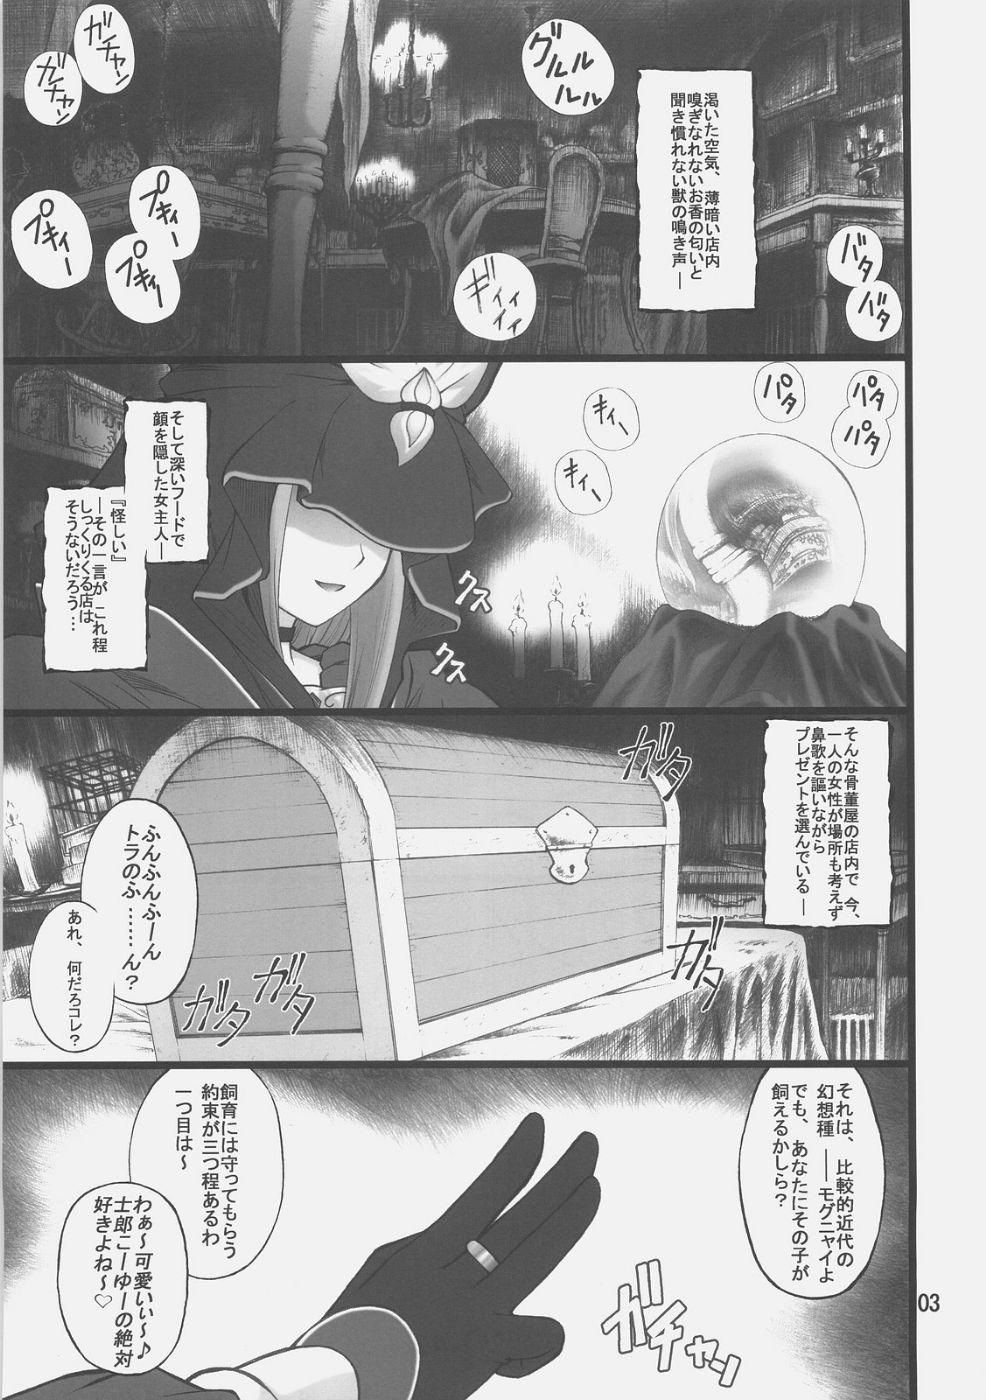 Jocks Grem-Rin 1 - Fate stay night Movies - Page 2